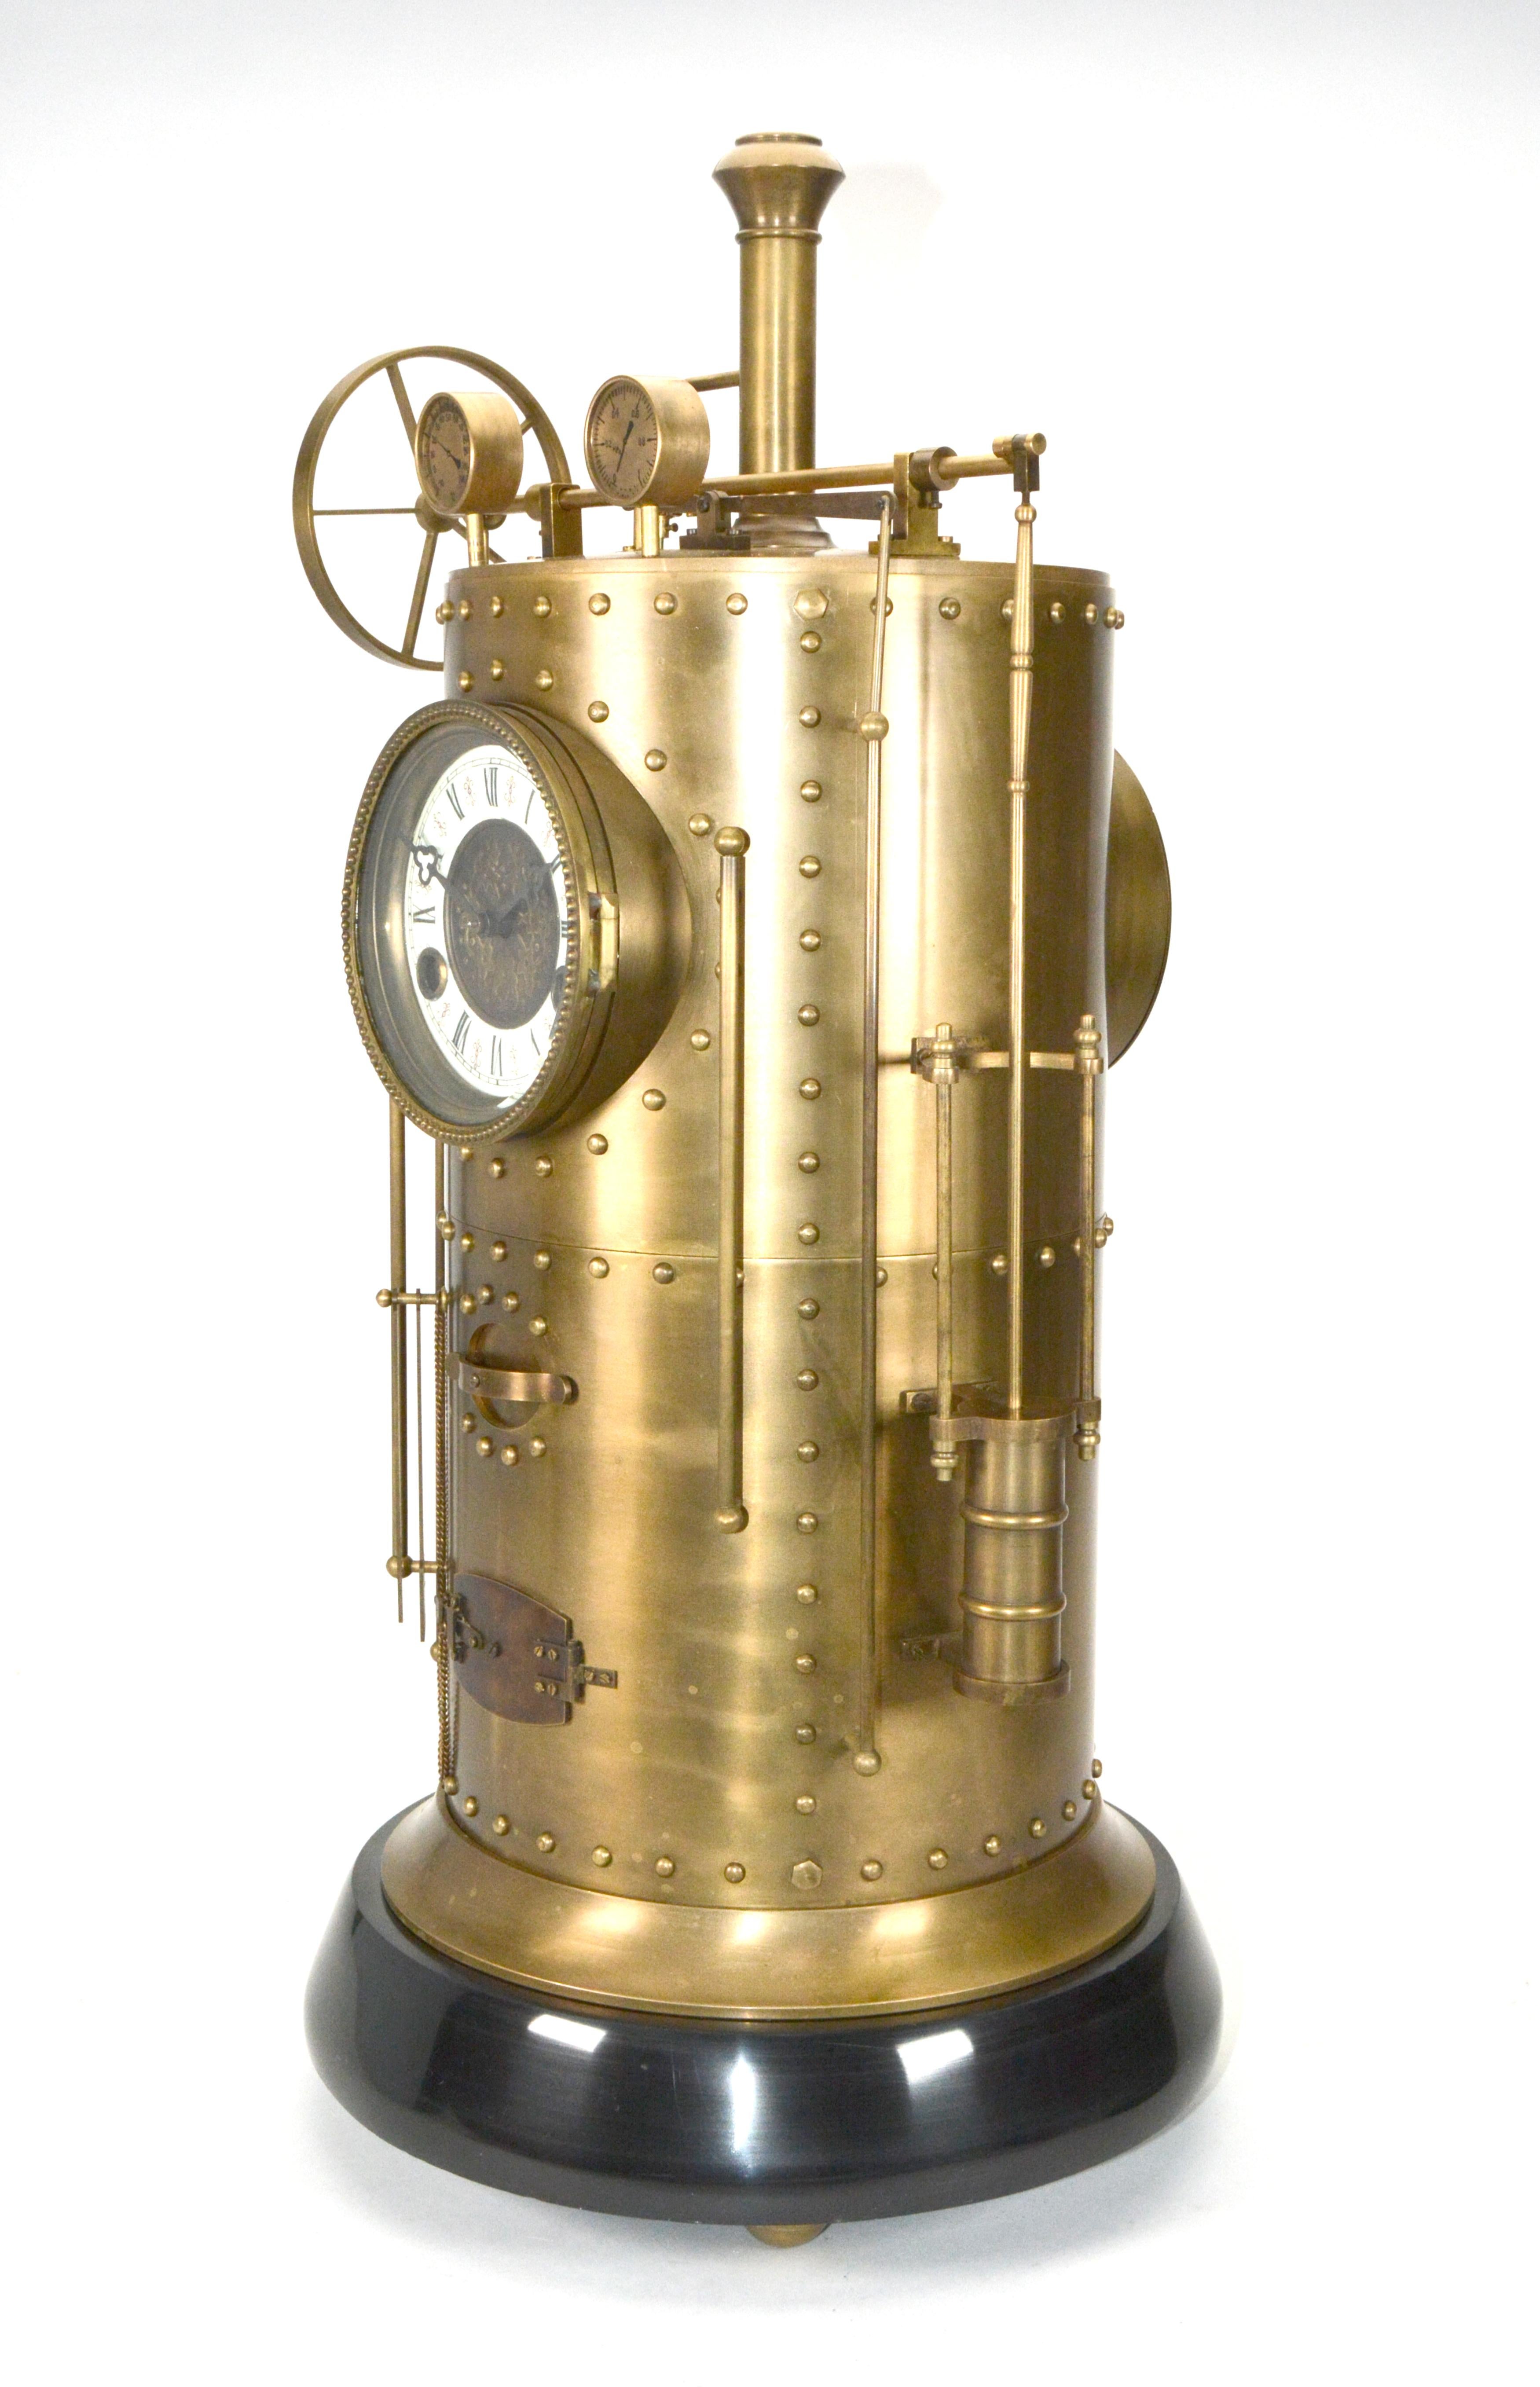 Große französische Stil 8 Tag Messing Automaton Dampfmaschine Industrieuhr 

Hier haben wir ein wunderbares Beispiel für die in der französischen Uhrmacherei beliebten Industrieserien. Während die Uhr schlägt, dreht sich das Rad des Antriebsstrangs,